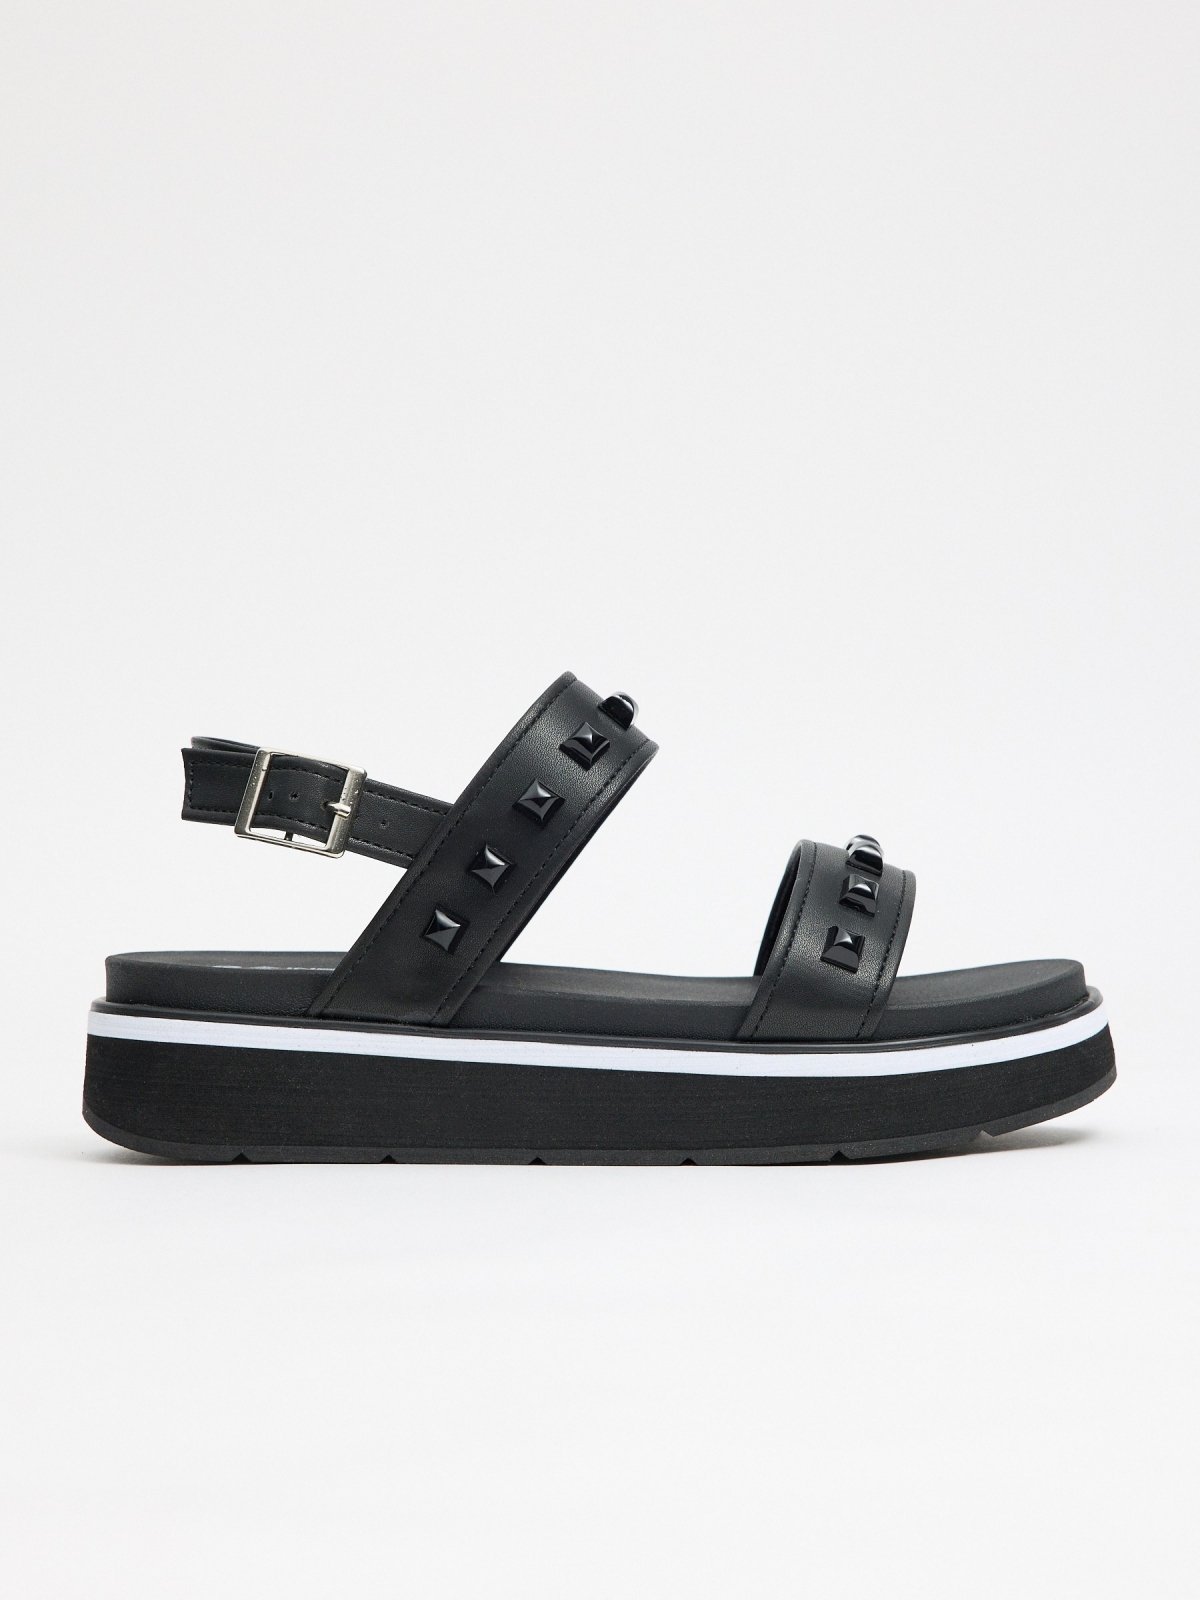 Sandália efeito couro com tachas preto